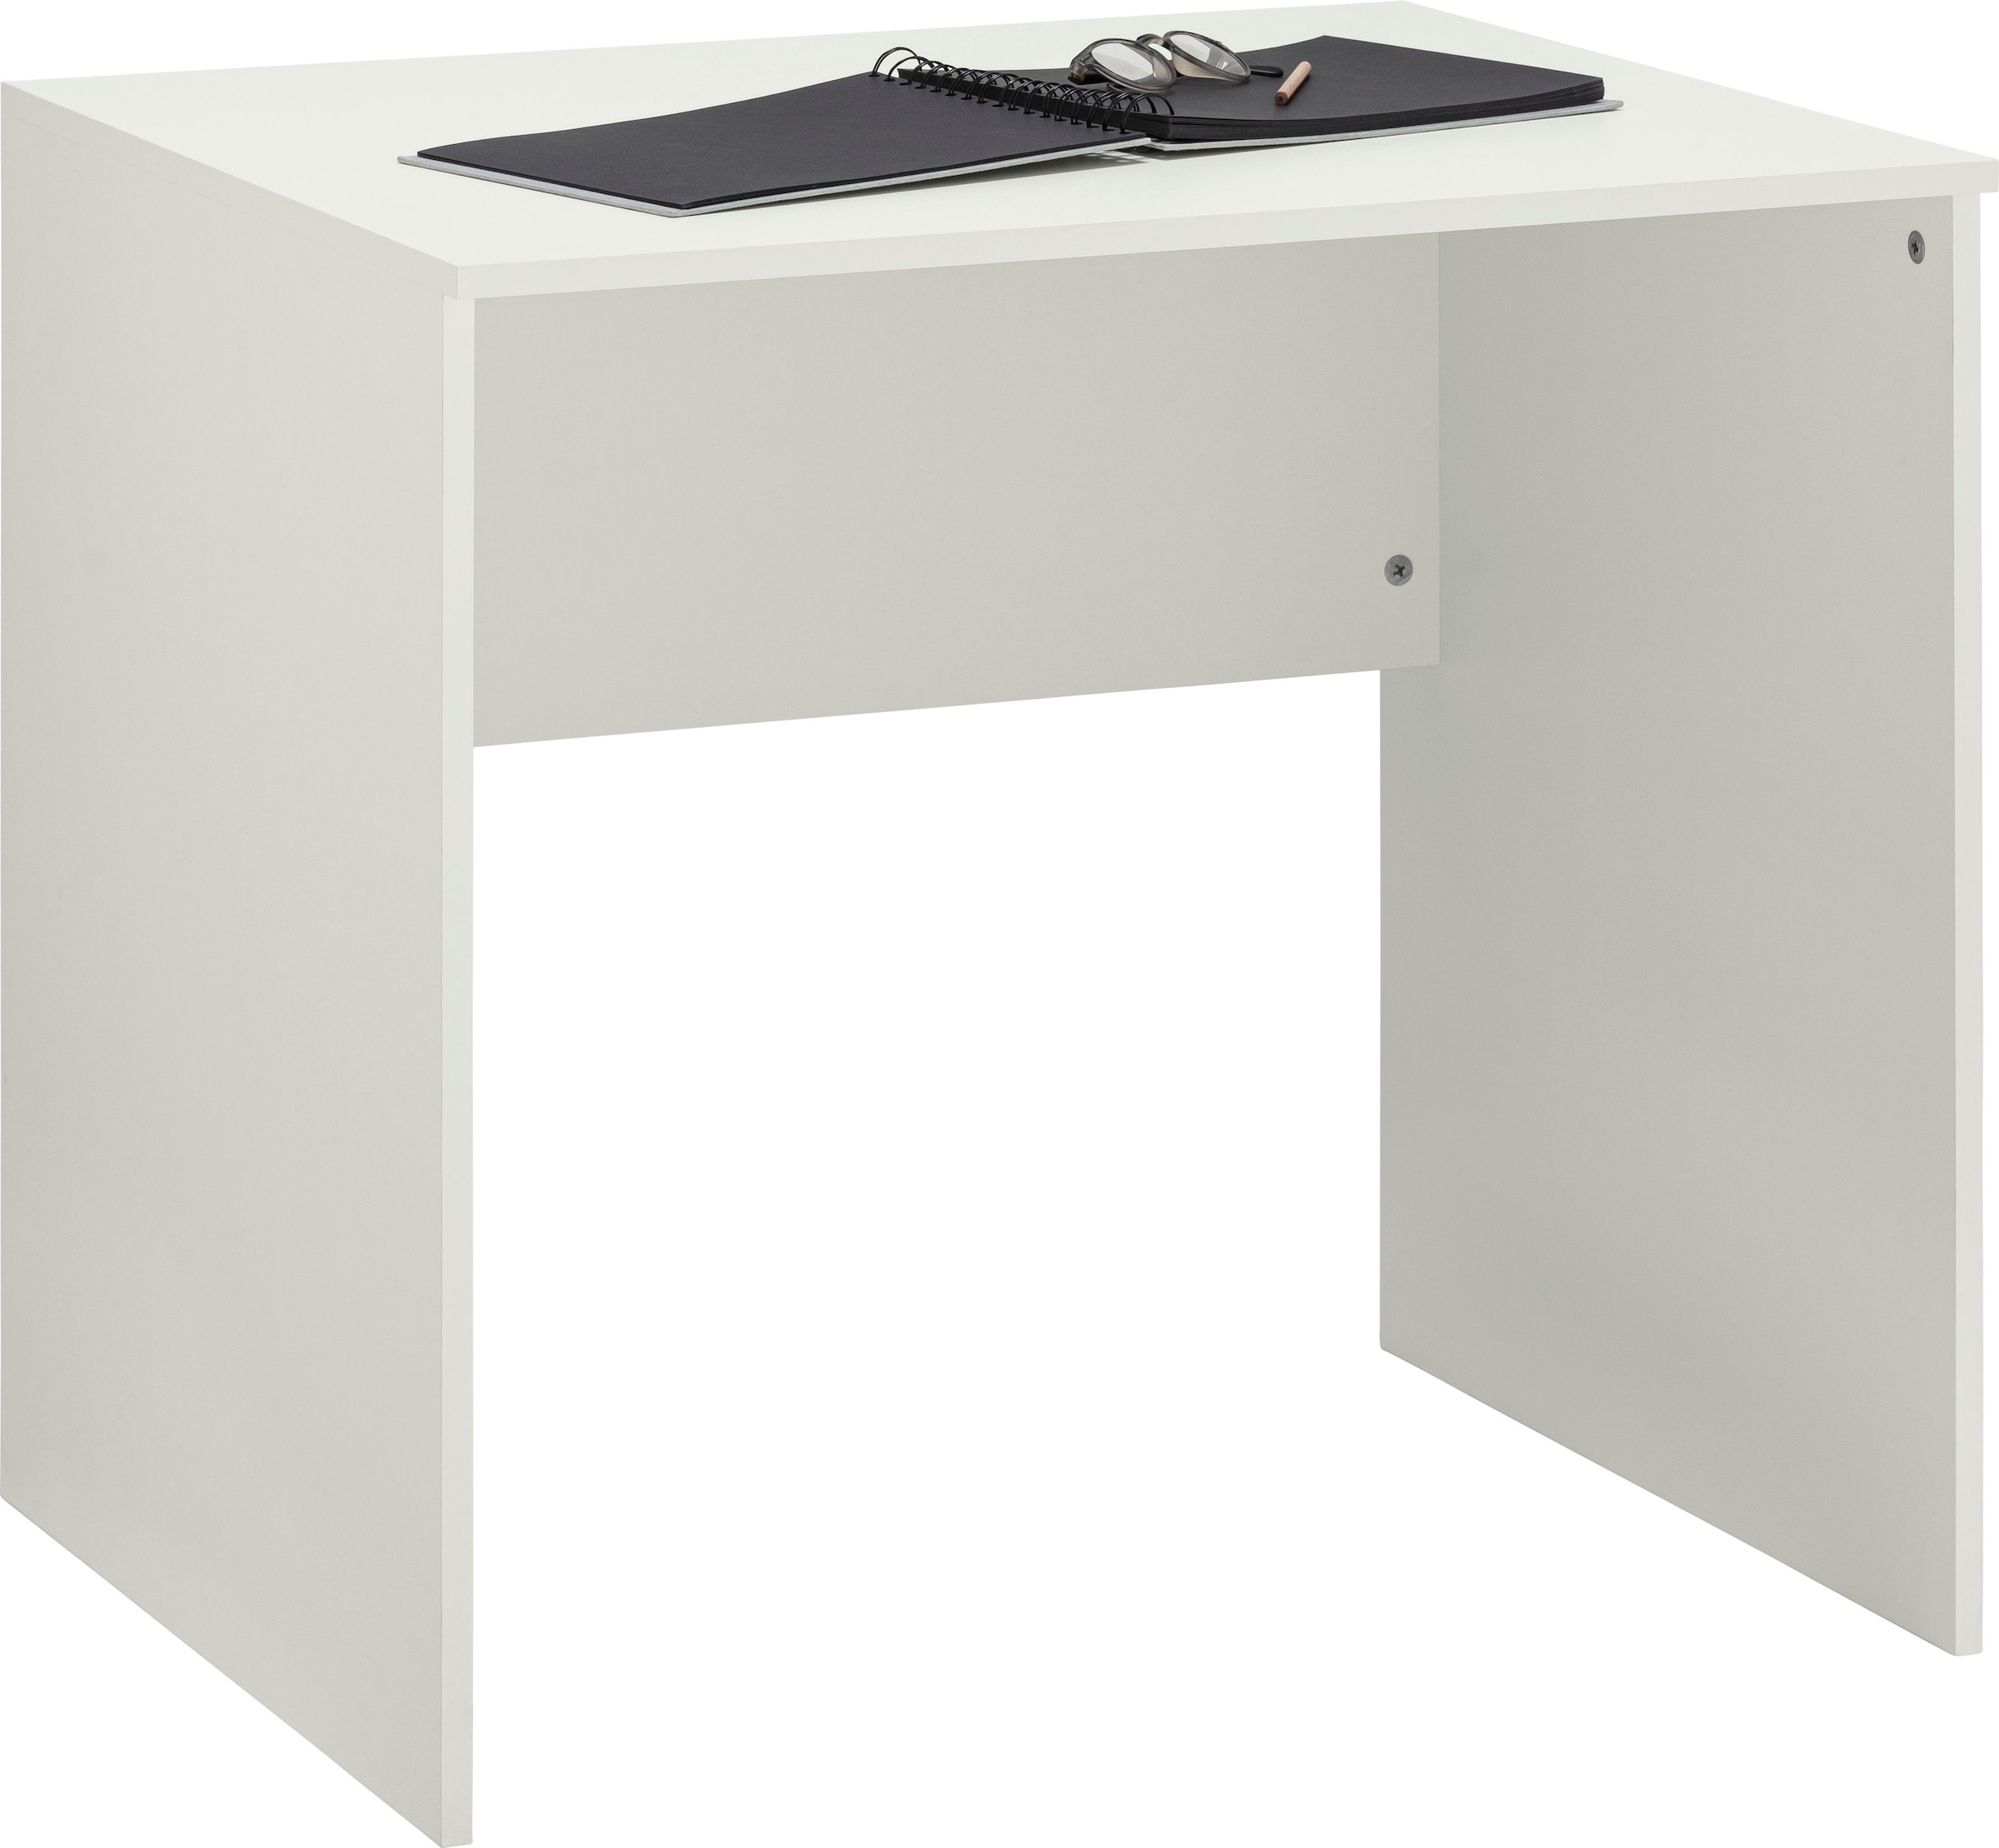 VOGL Möbelfabrik Schreibtisch jetzt kaufen »Modila«